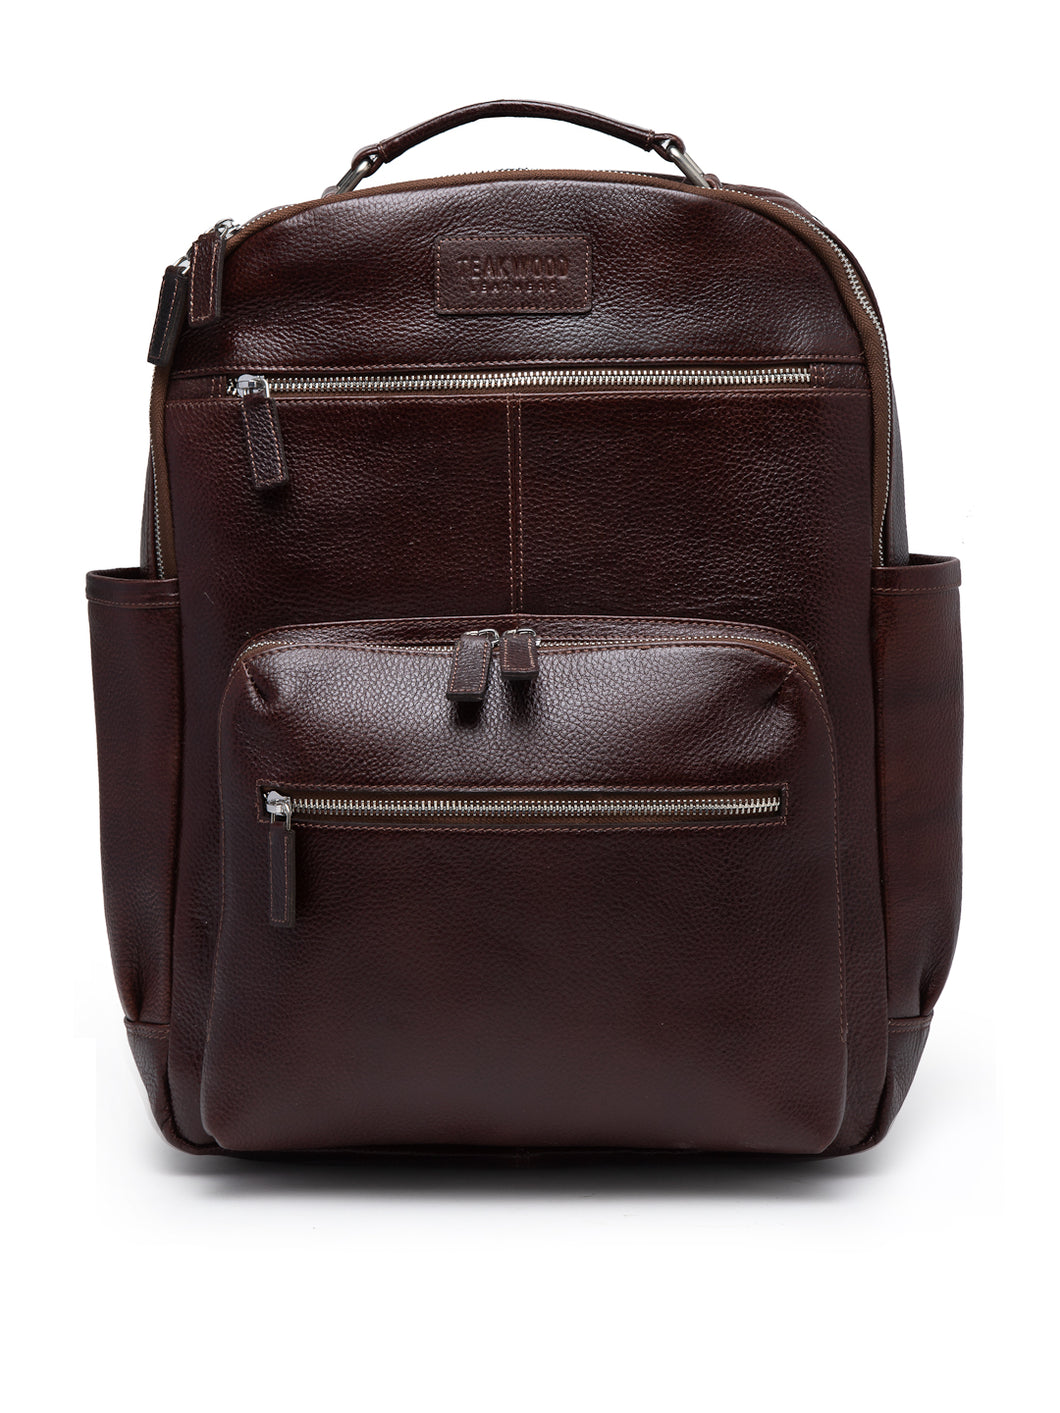 Teakwood Unisex Genuine Leather Dark Brown textured Backpack||Unisex Laptop Bag/Backpack